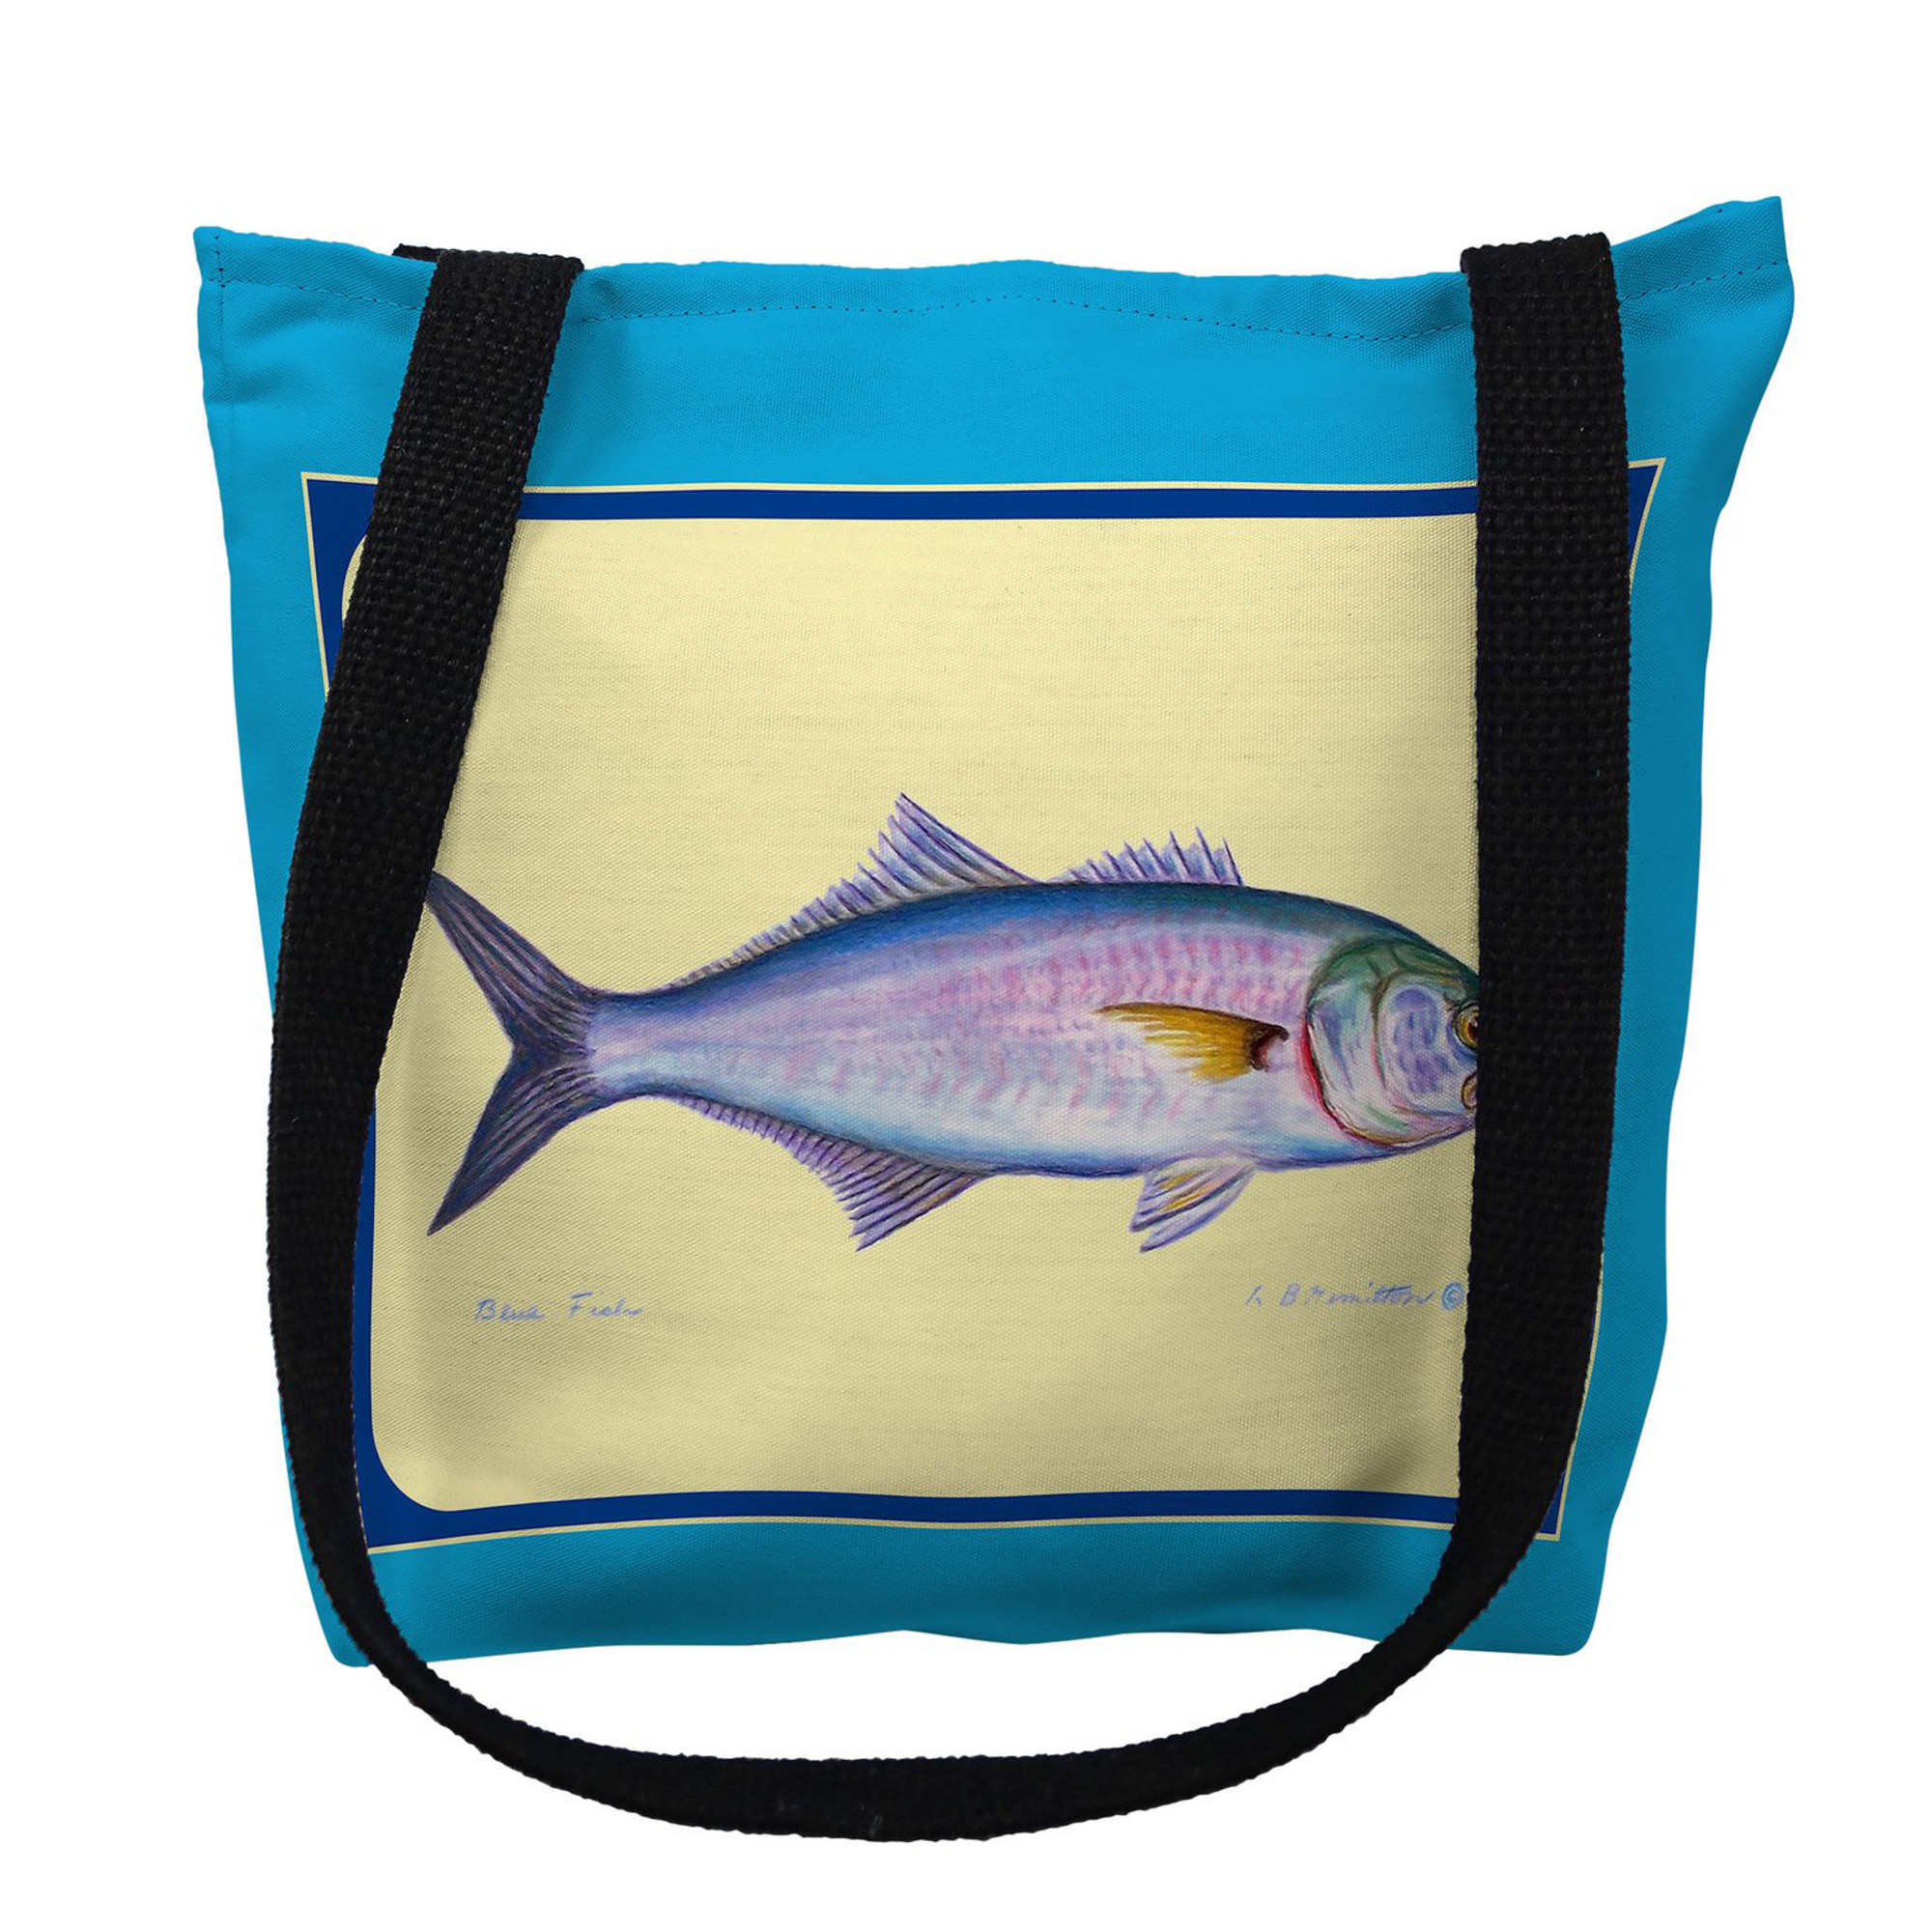 Blue Fish Tote Bag, Fish Tote